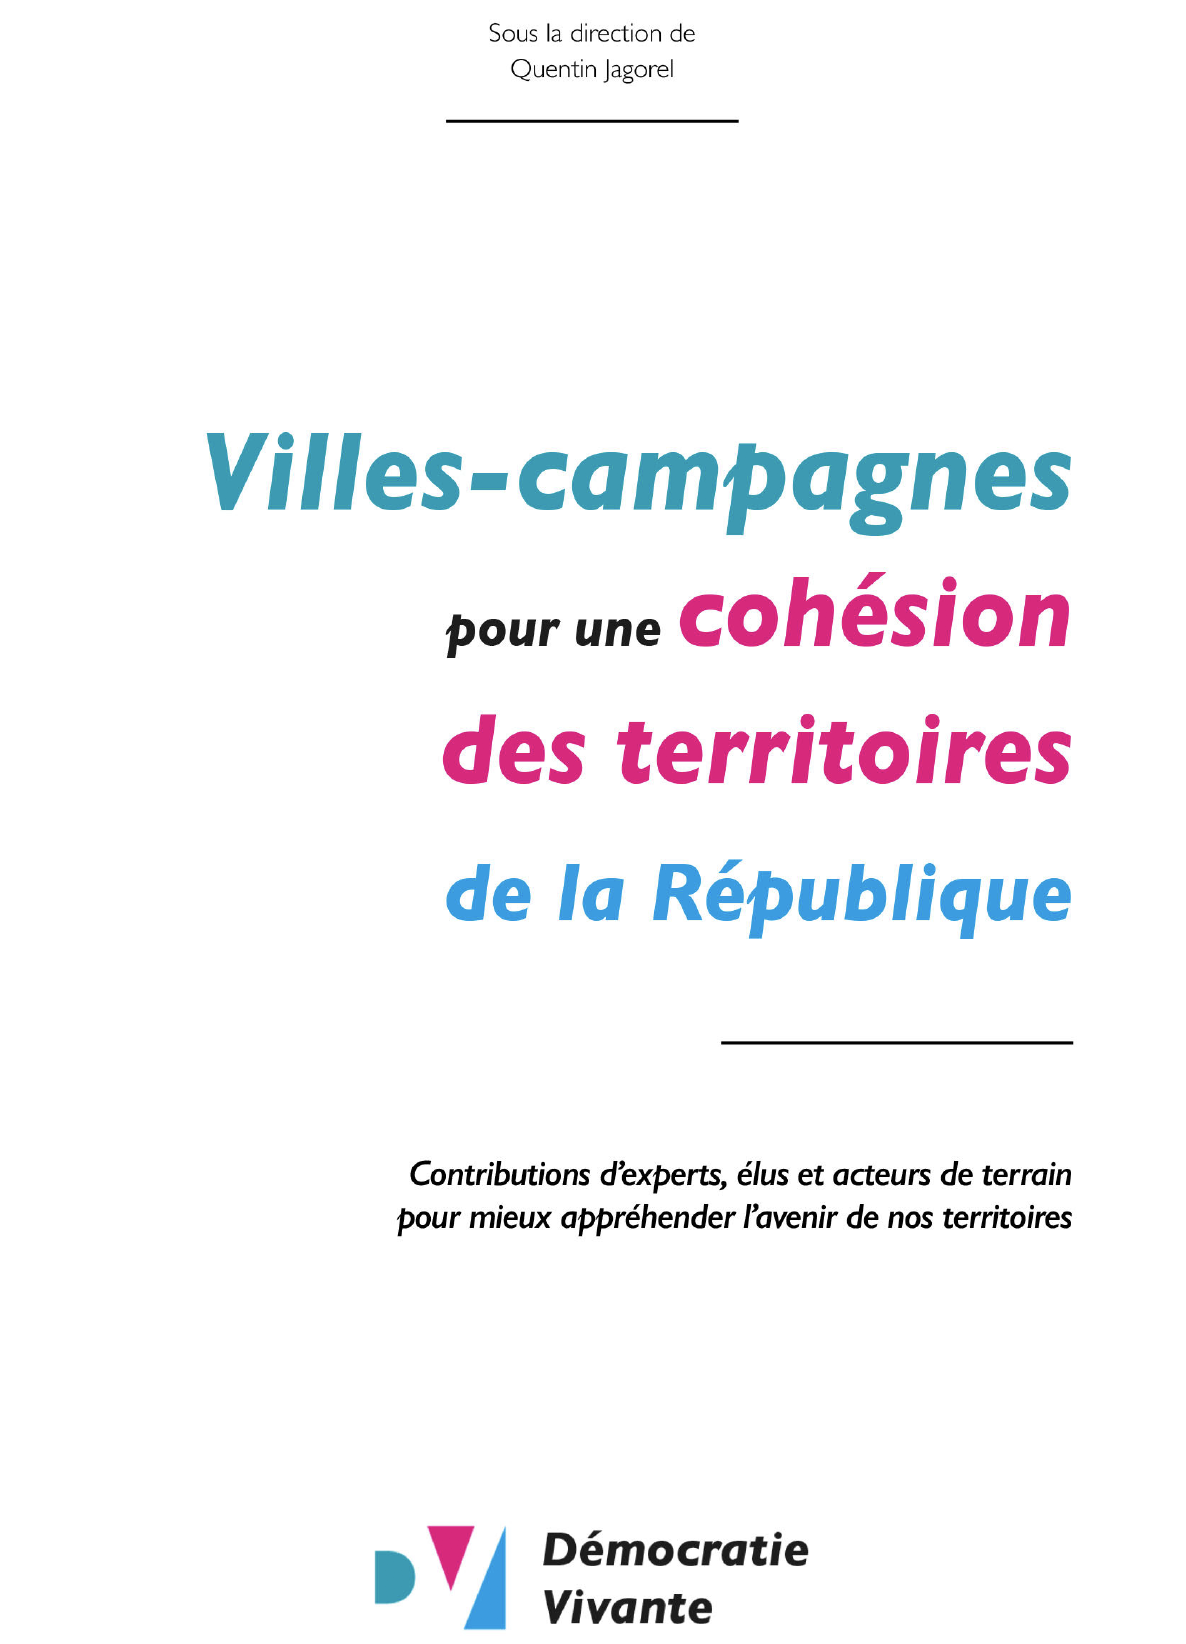 Ouvrage collectif de Démocratie vivante « Villes-campagnes : pour une cohésion des territoires de la République ». Co-auteur : Vincent Pacini